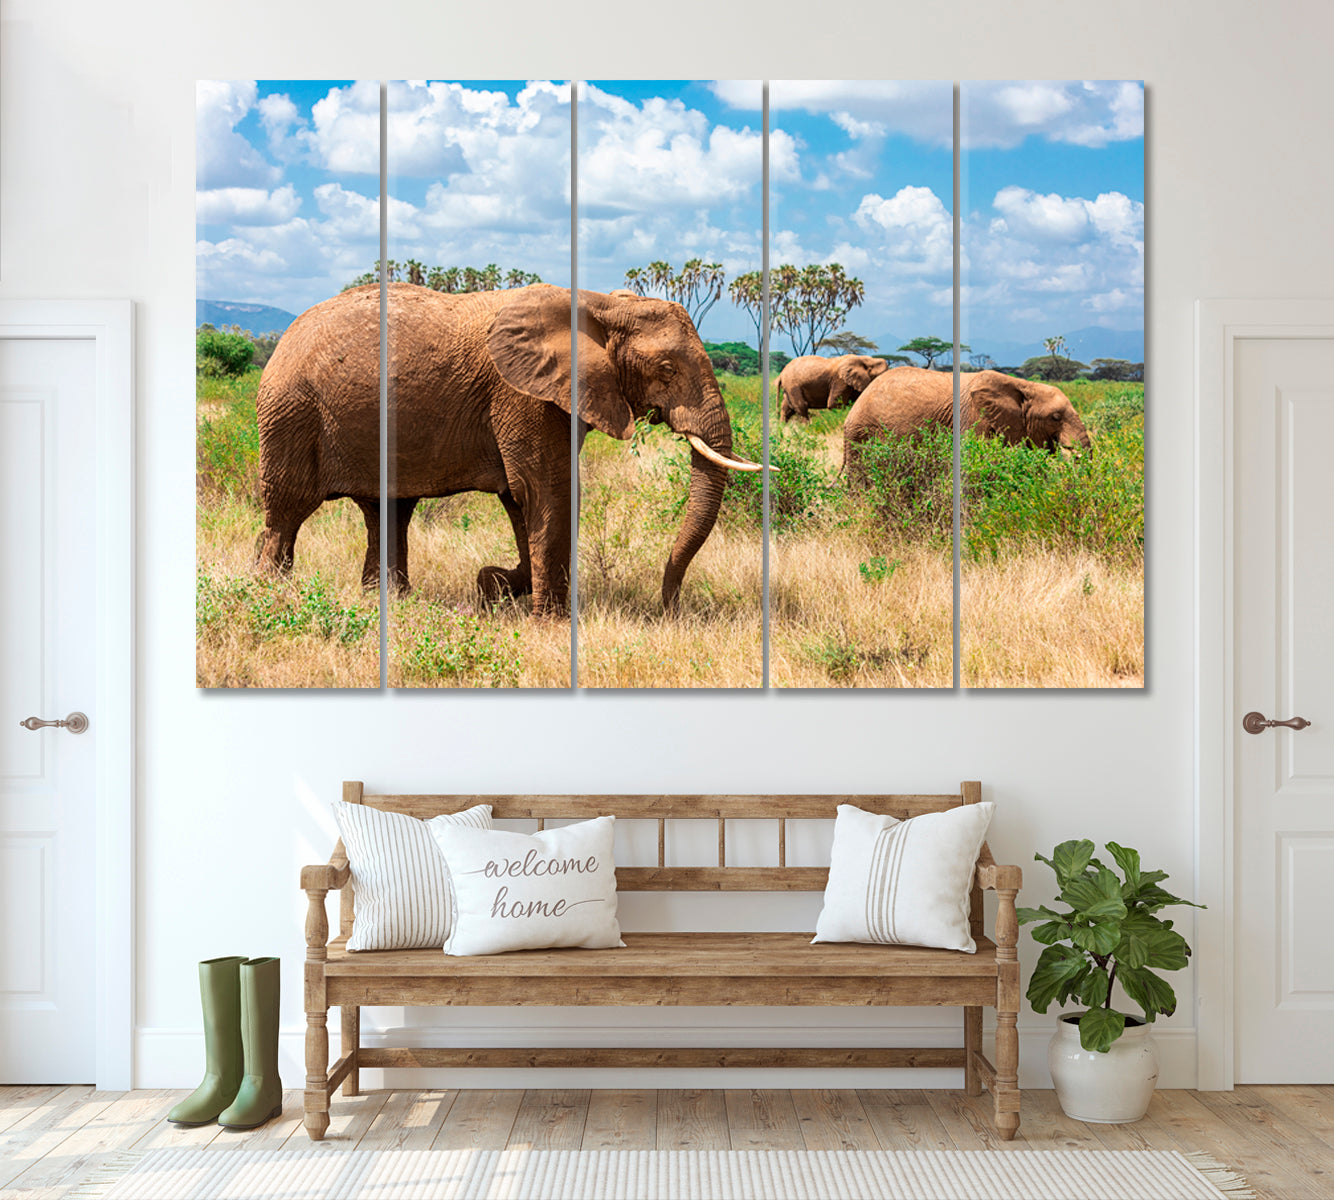 Elephants in Kenya Savanna Canvas Print ArtLexy 5 Panels 36"x24" inches 